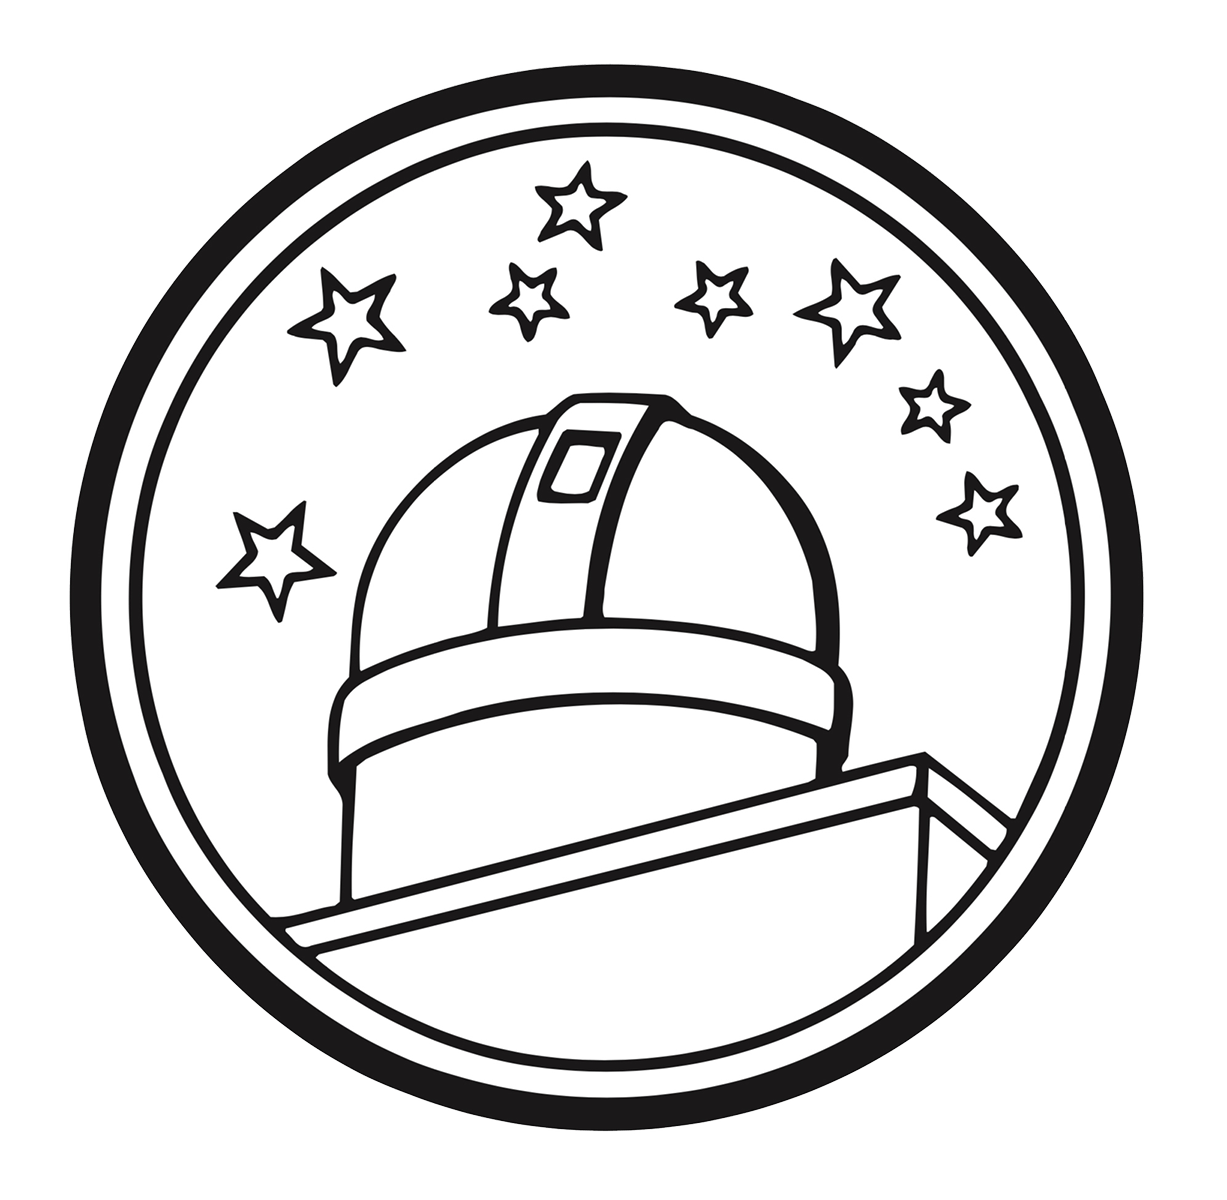 星徽标志描绘出日内瓦天文台穹顶